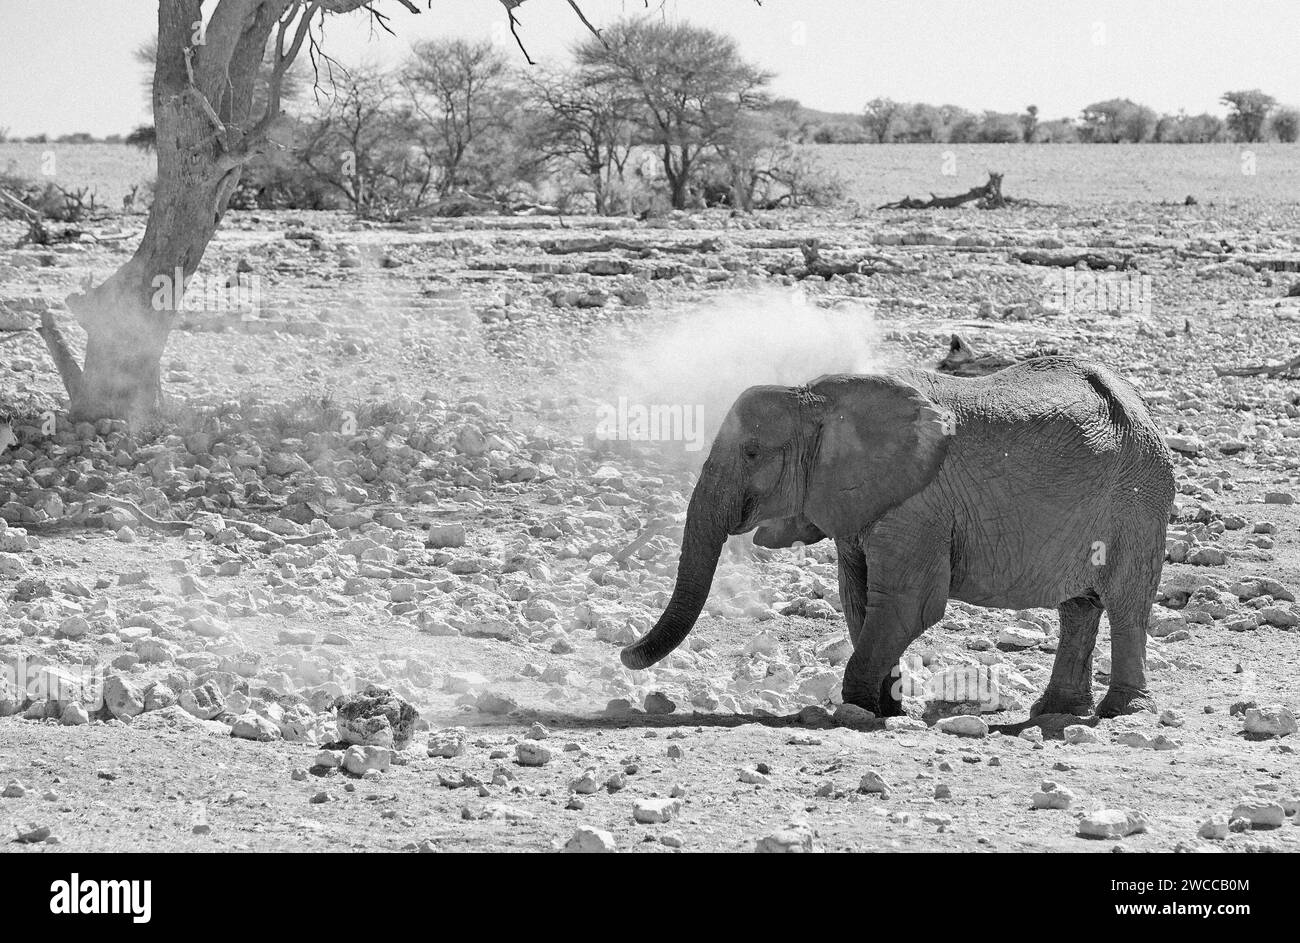 Einsamer afrikanischer Elefant auf der trockenen, staubigen Ebene, der sich mit Staub besprüht, um seine Haut zu schützen - fliegende Staubpartikel werden vorgefunden. Stockfoto